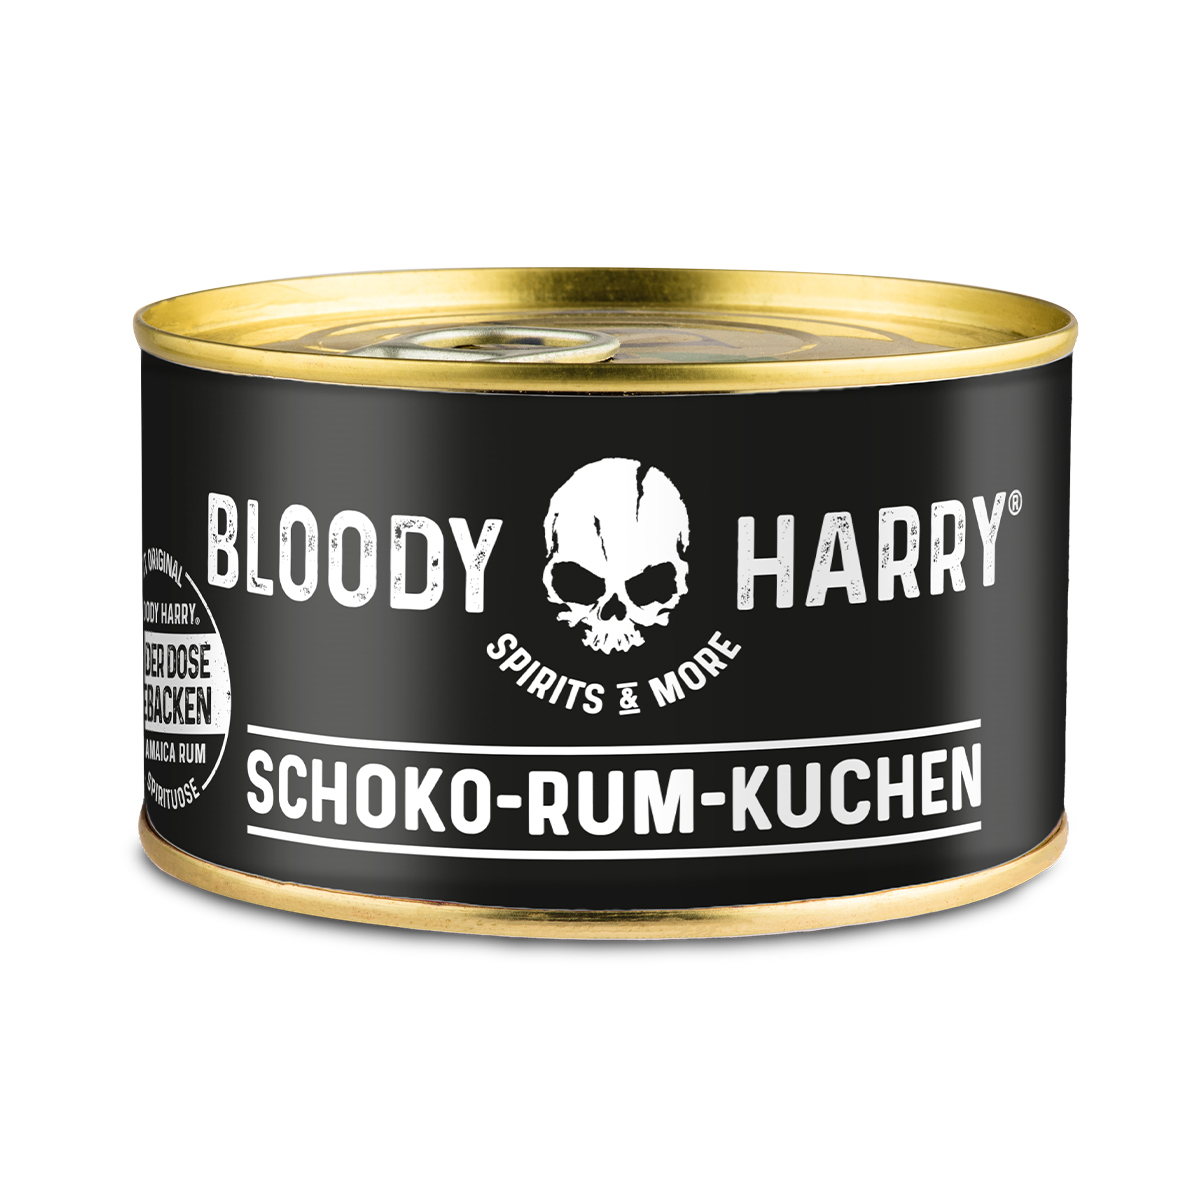 BLOODY HARRY Schoko-Rum-Kuchen in der Dose, 200g